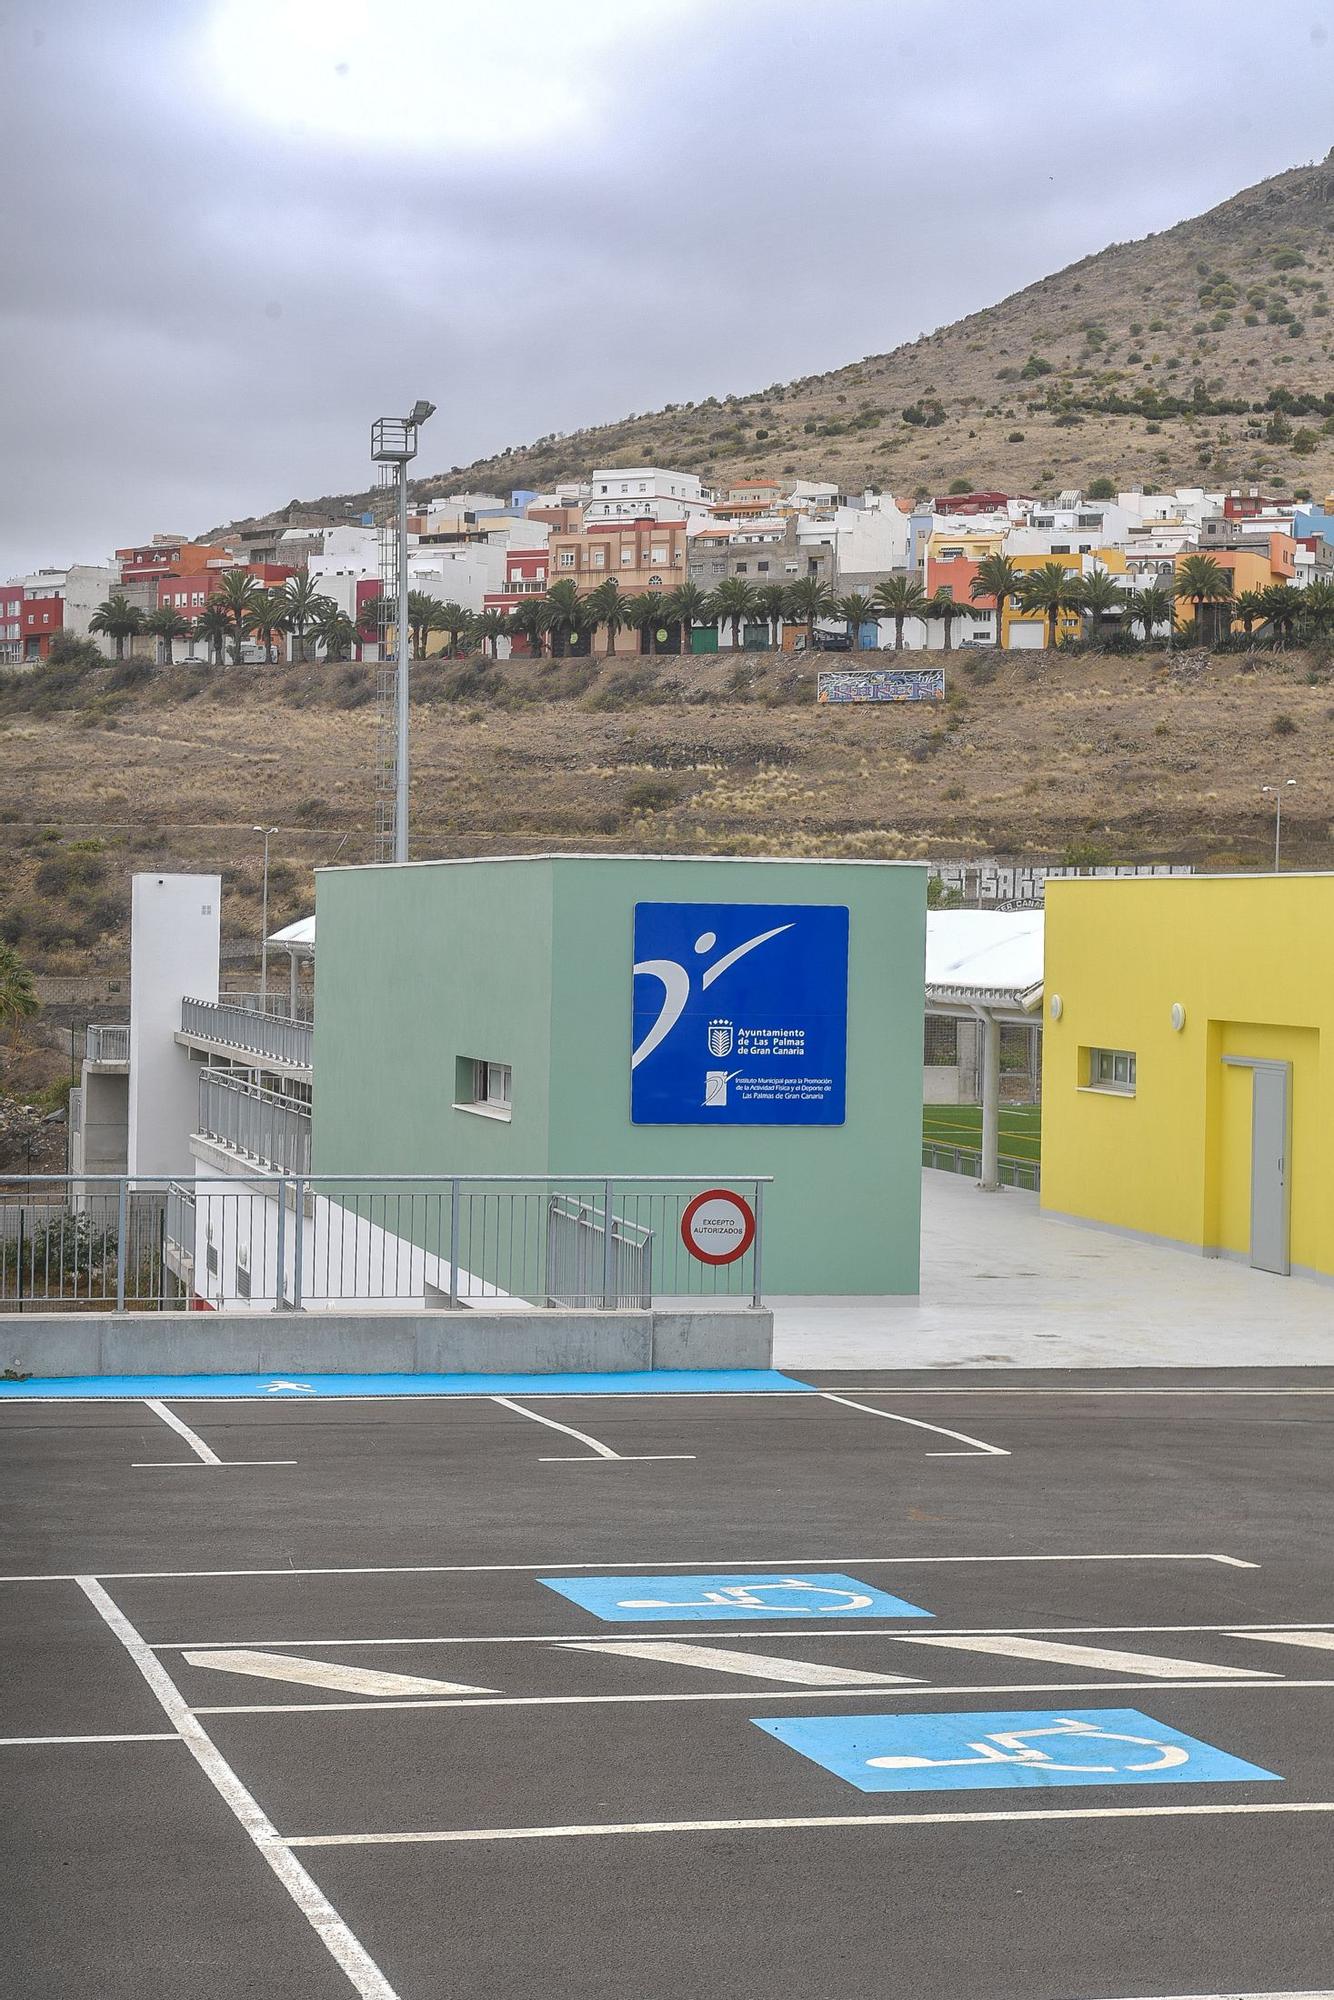 Campo de fútbol del barrio de La Suerte, en Las Palmas de Gran Canaria